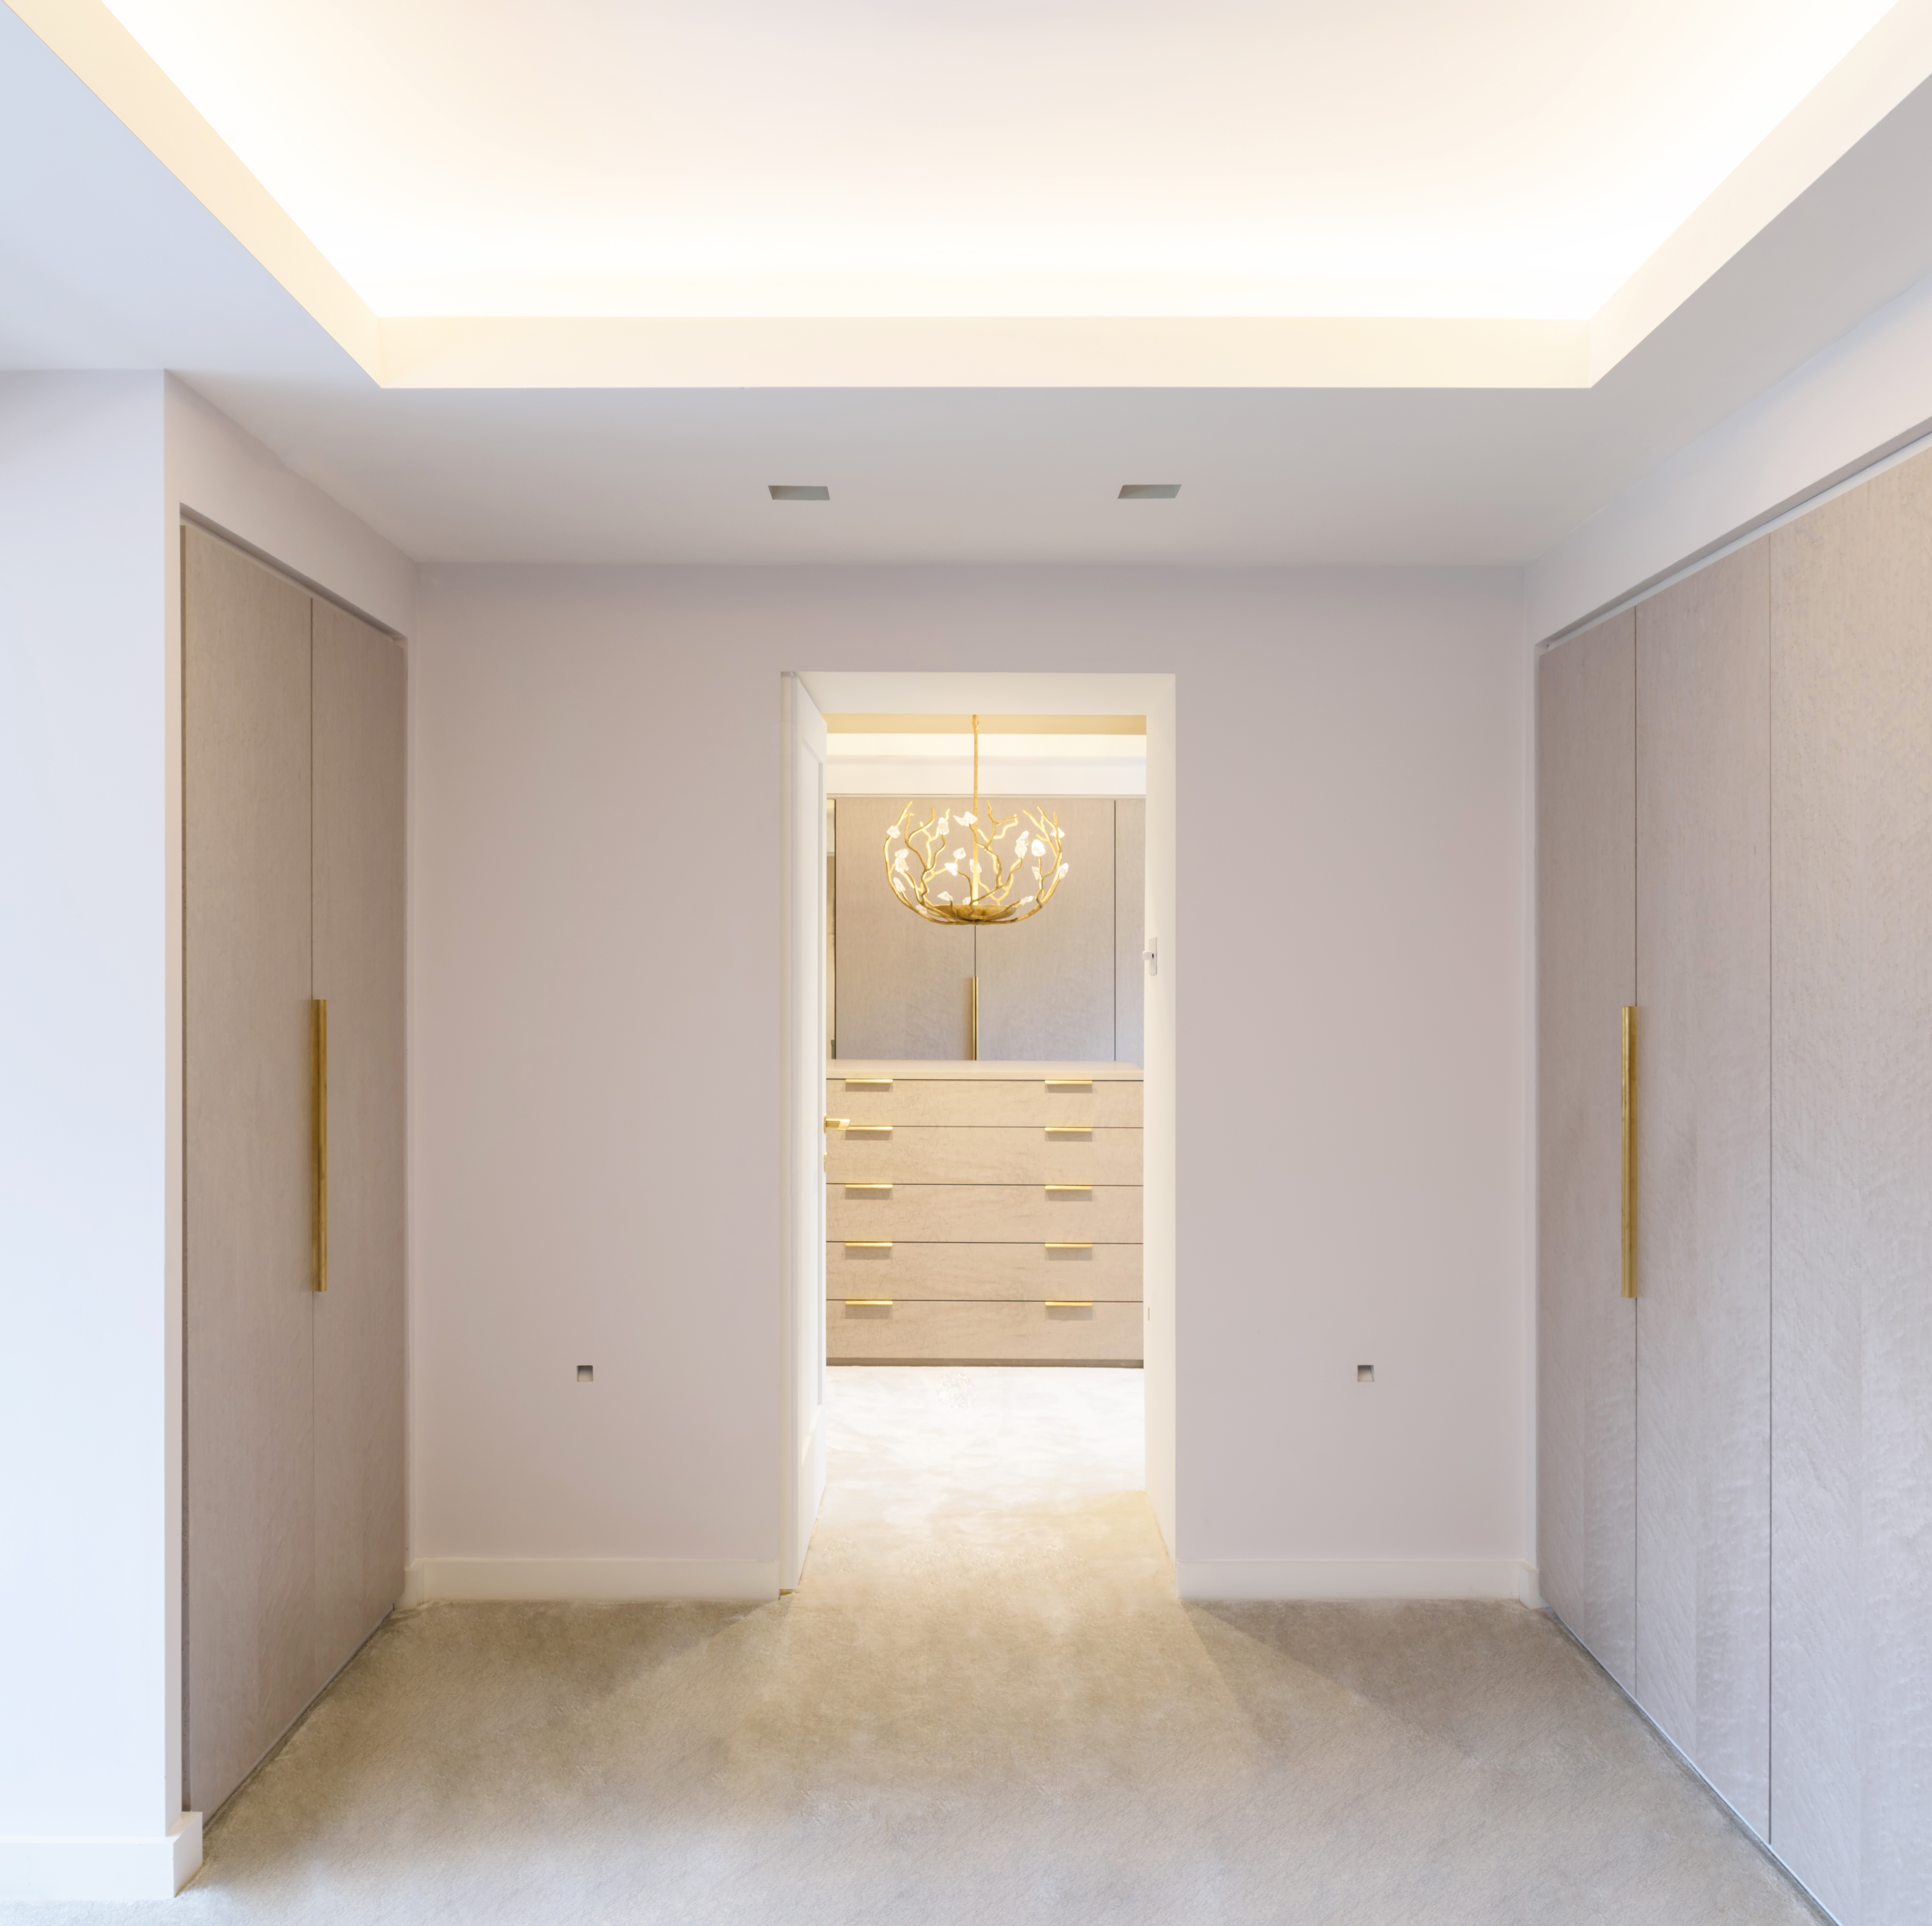 Luxurious elegant dressing room recessed ceiling builtin storage